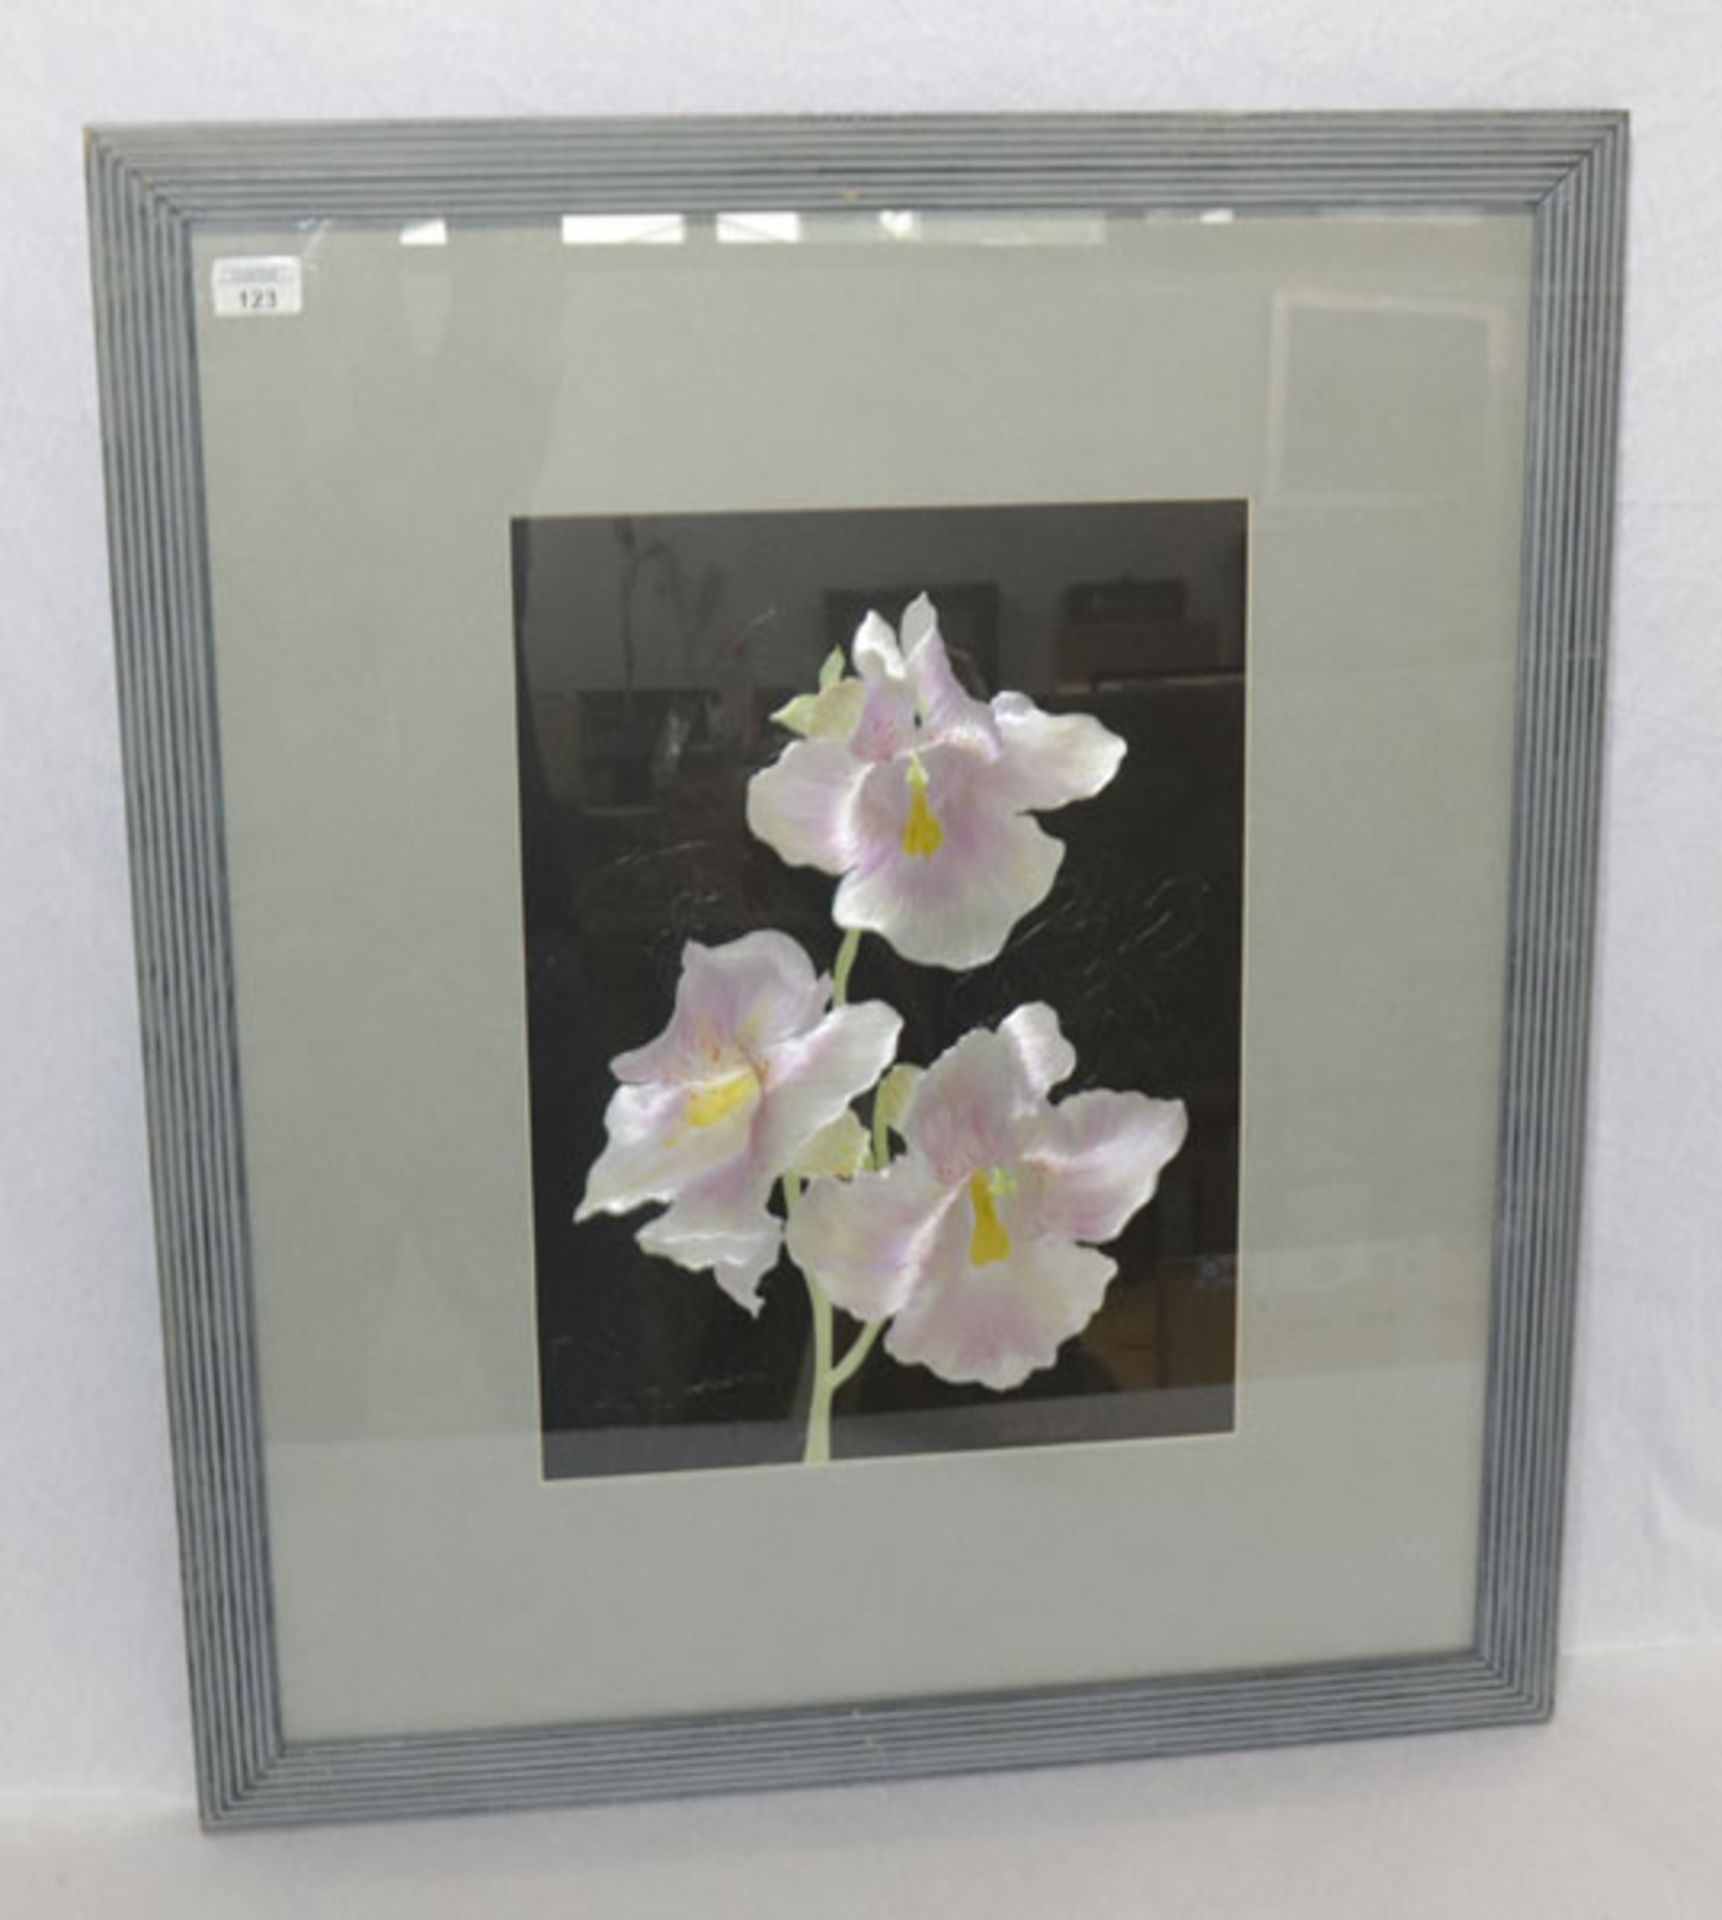 Gemälde 'Blumenstillleben Orchideen', signiert Judith Davies, 1989, London, mit Passepartout unter